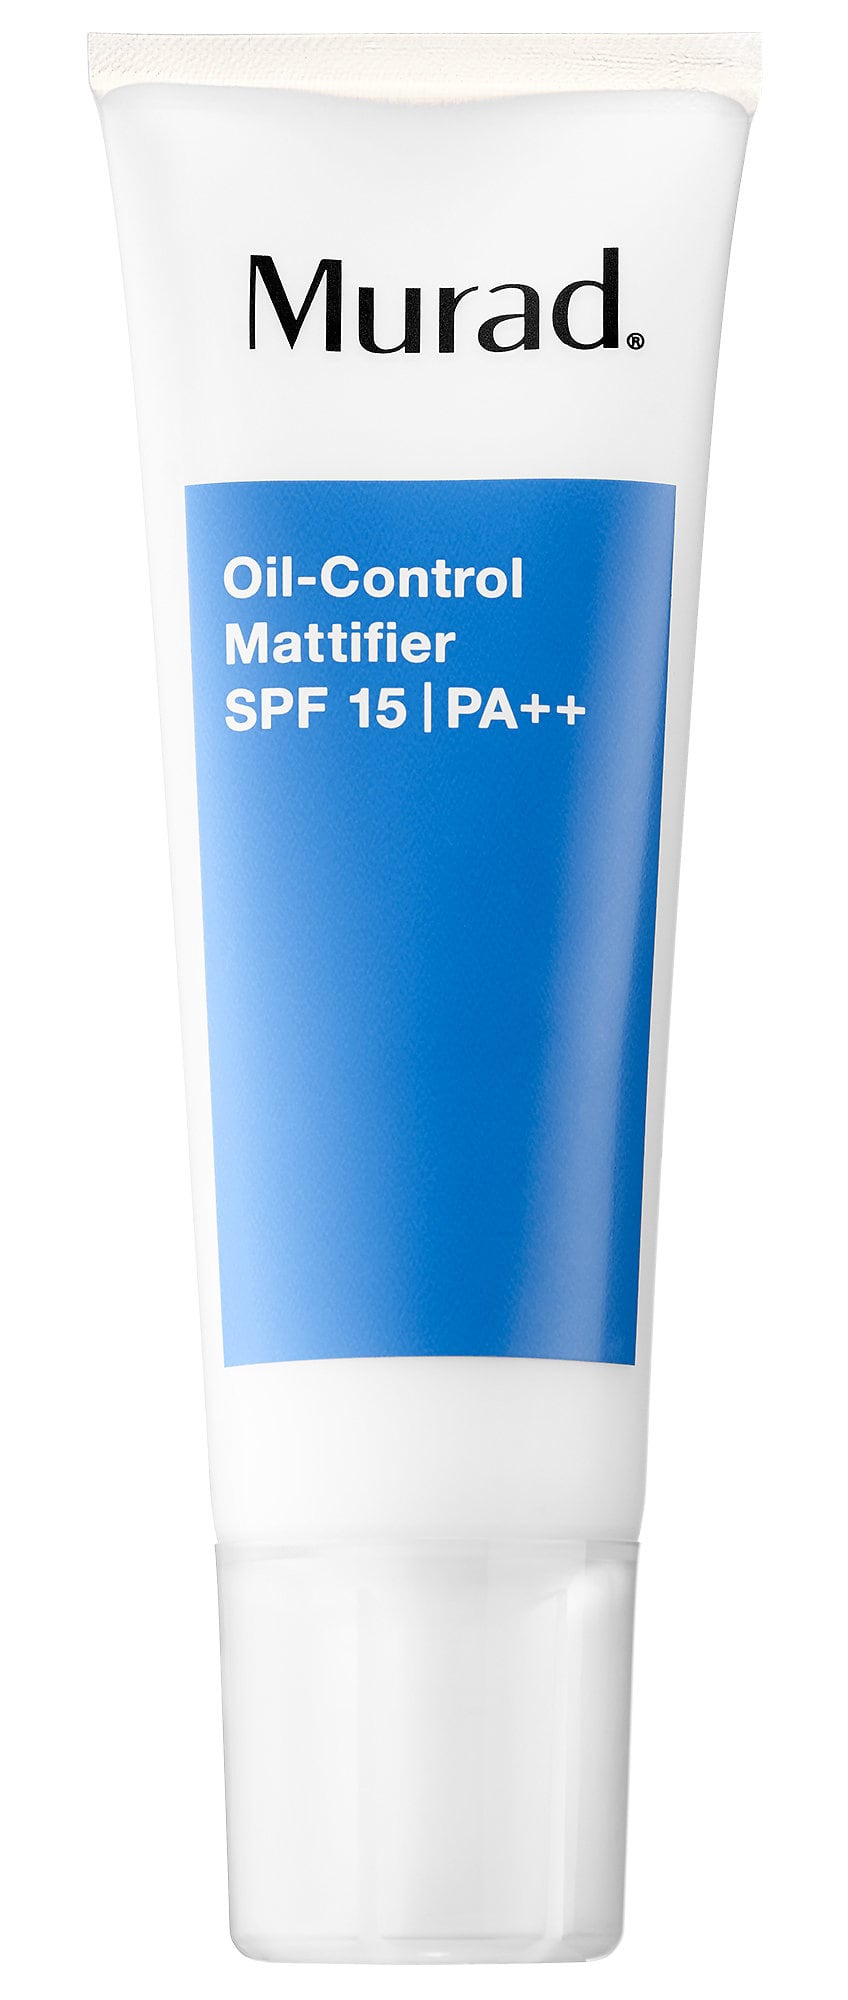 Murad Oil-Control Mattifier SPF 15 Pa++